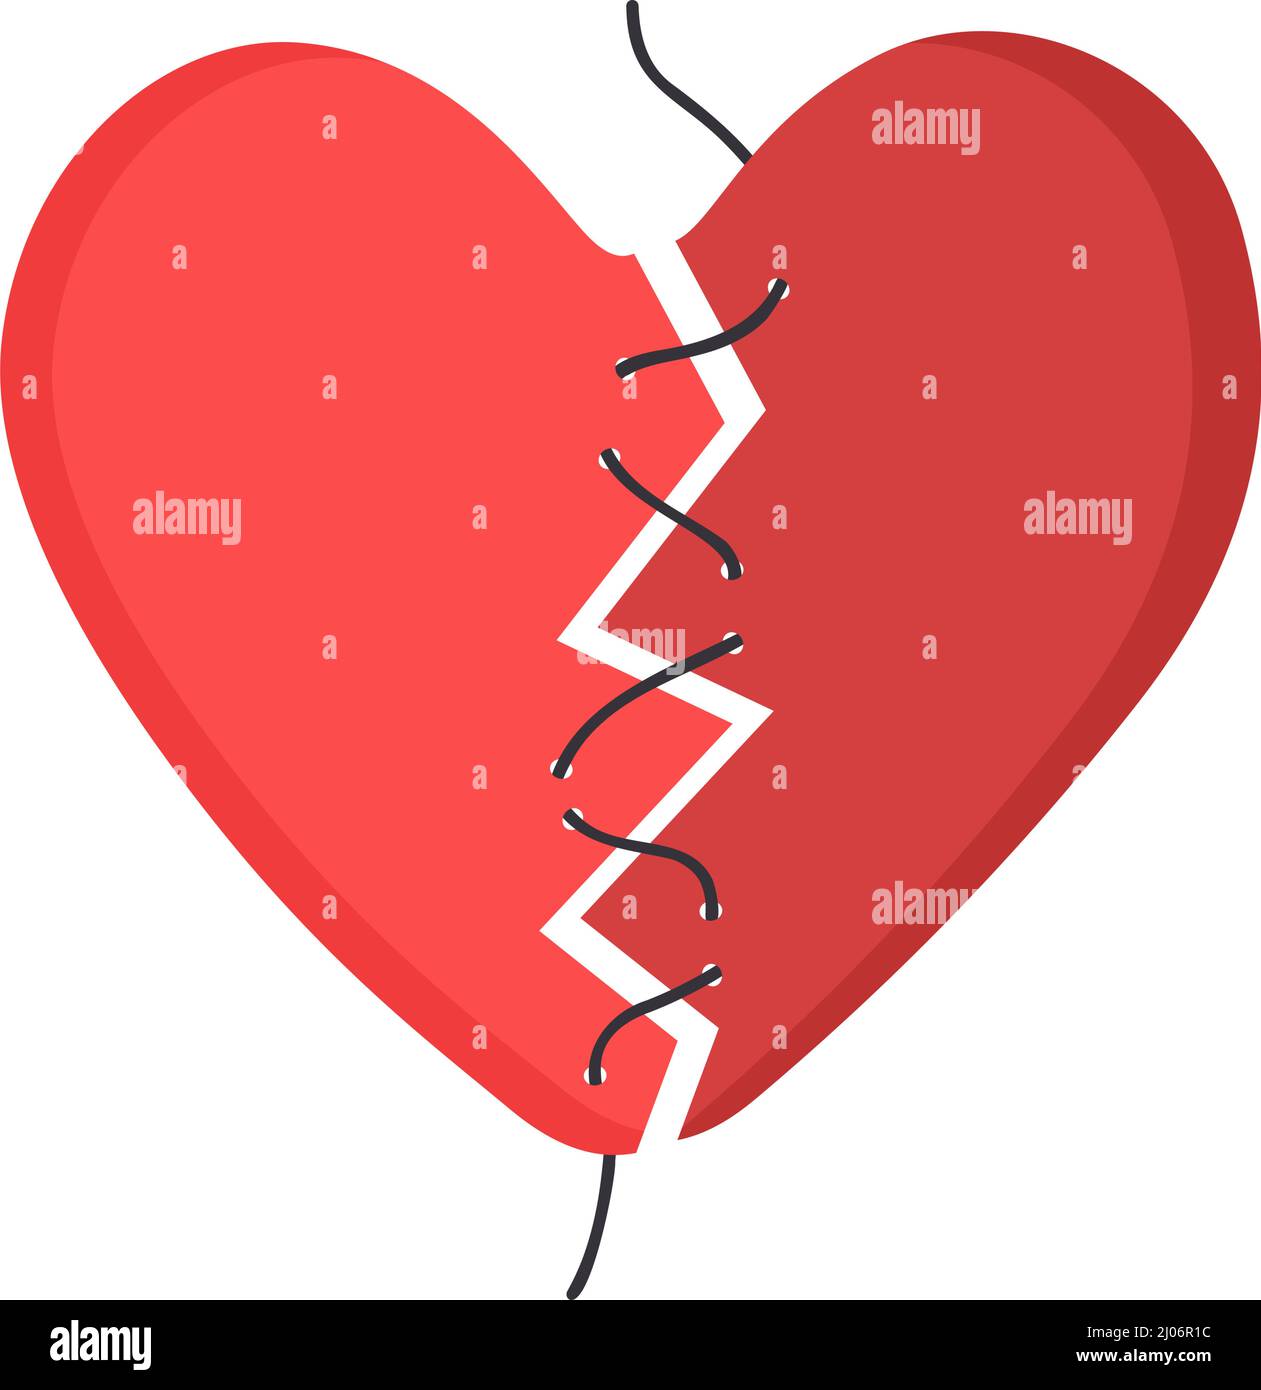 Cœur rouge, déchiré en 2 parties et cousu avec du fil. Concept d'amour brisé, triste fin de relation, manque de soins et d'aide. Illustration vectorielle plate Illustration de Vecteur